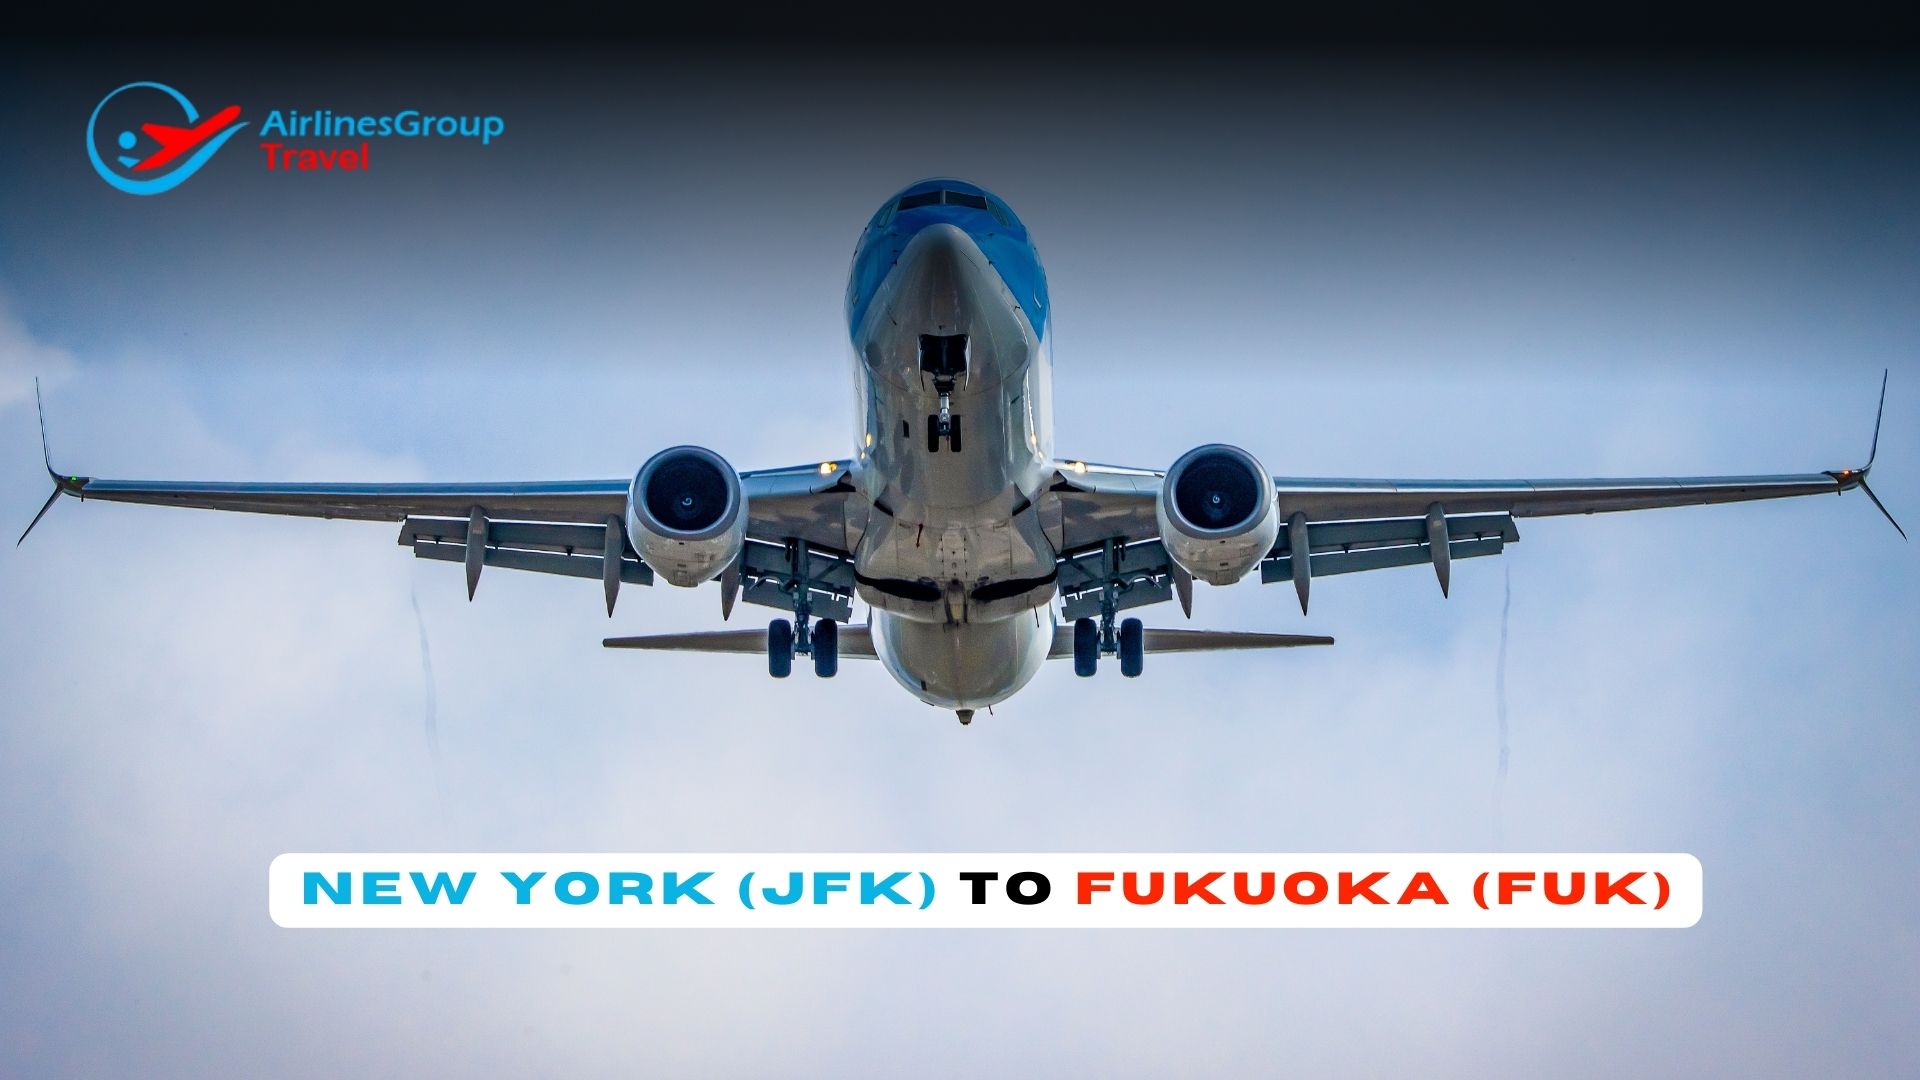 New York to Fukuoka